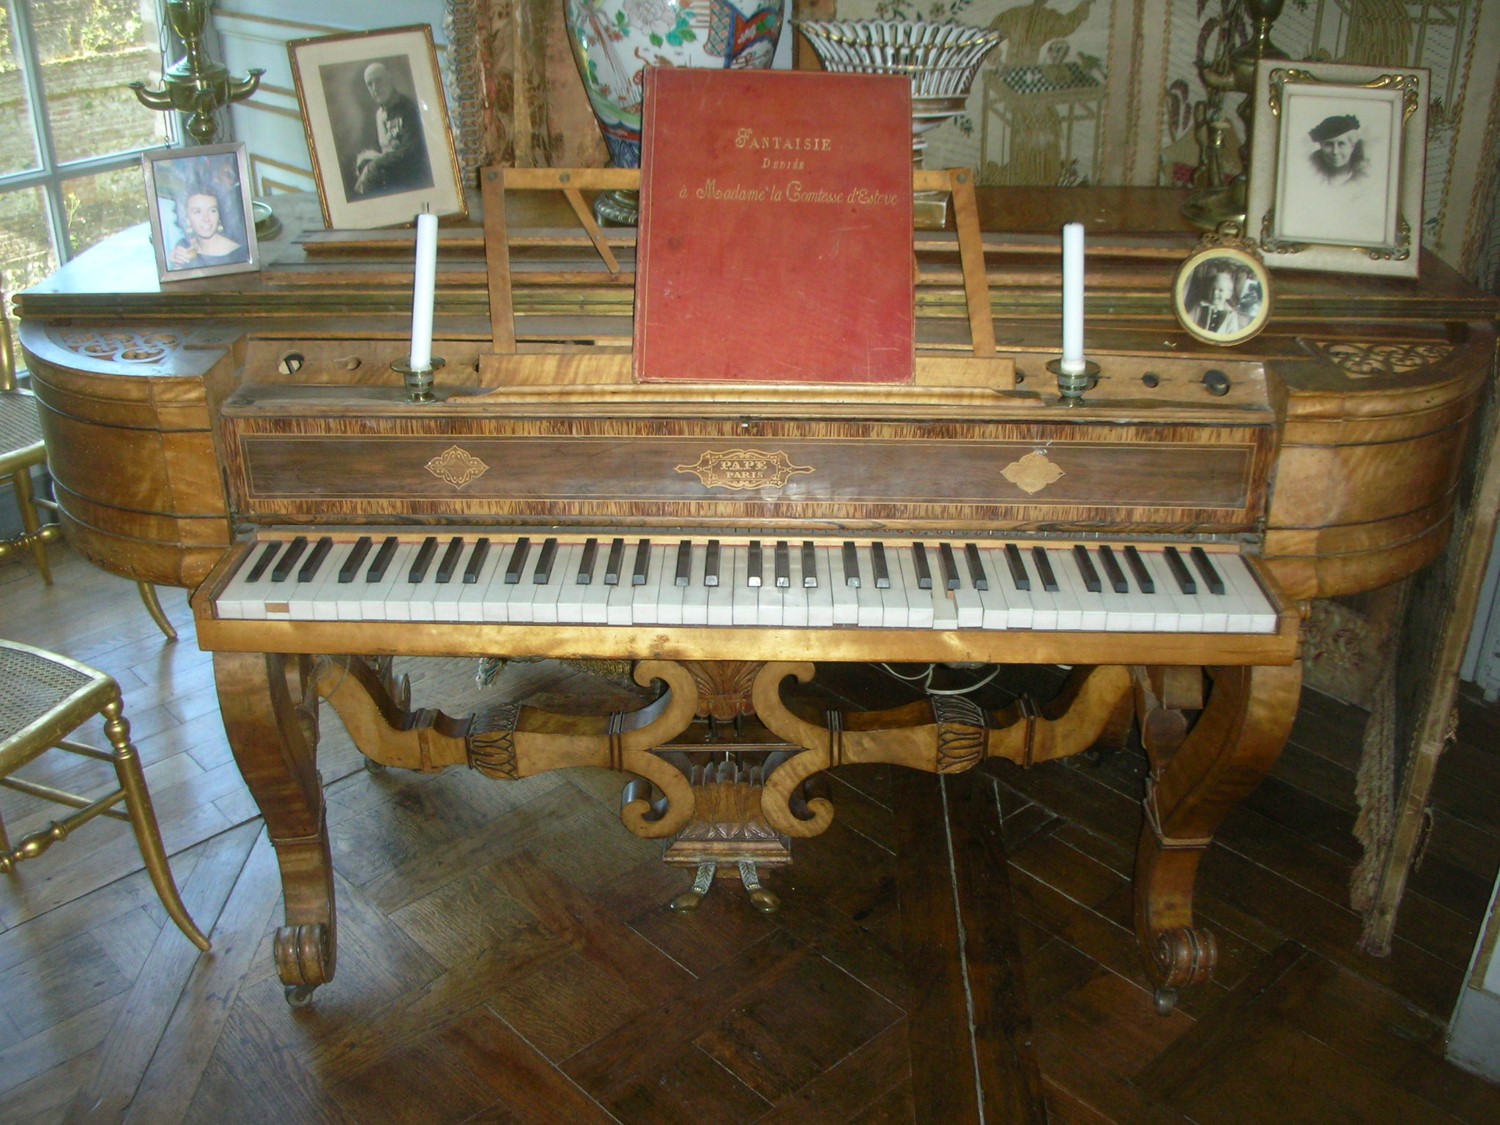 Le prix de l'association des Vieilles maisons françaises, d’une valeur de 5 000 € permettra d’aider à la restauration de ce très beau piano-forte